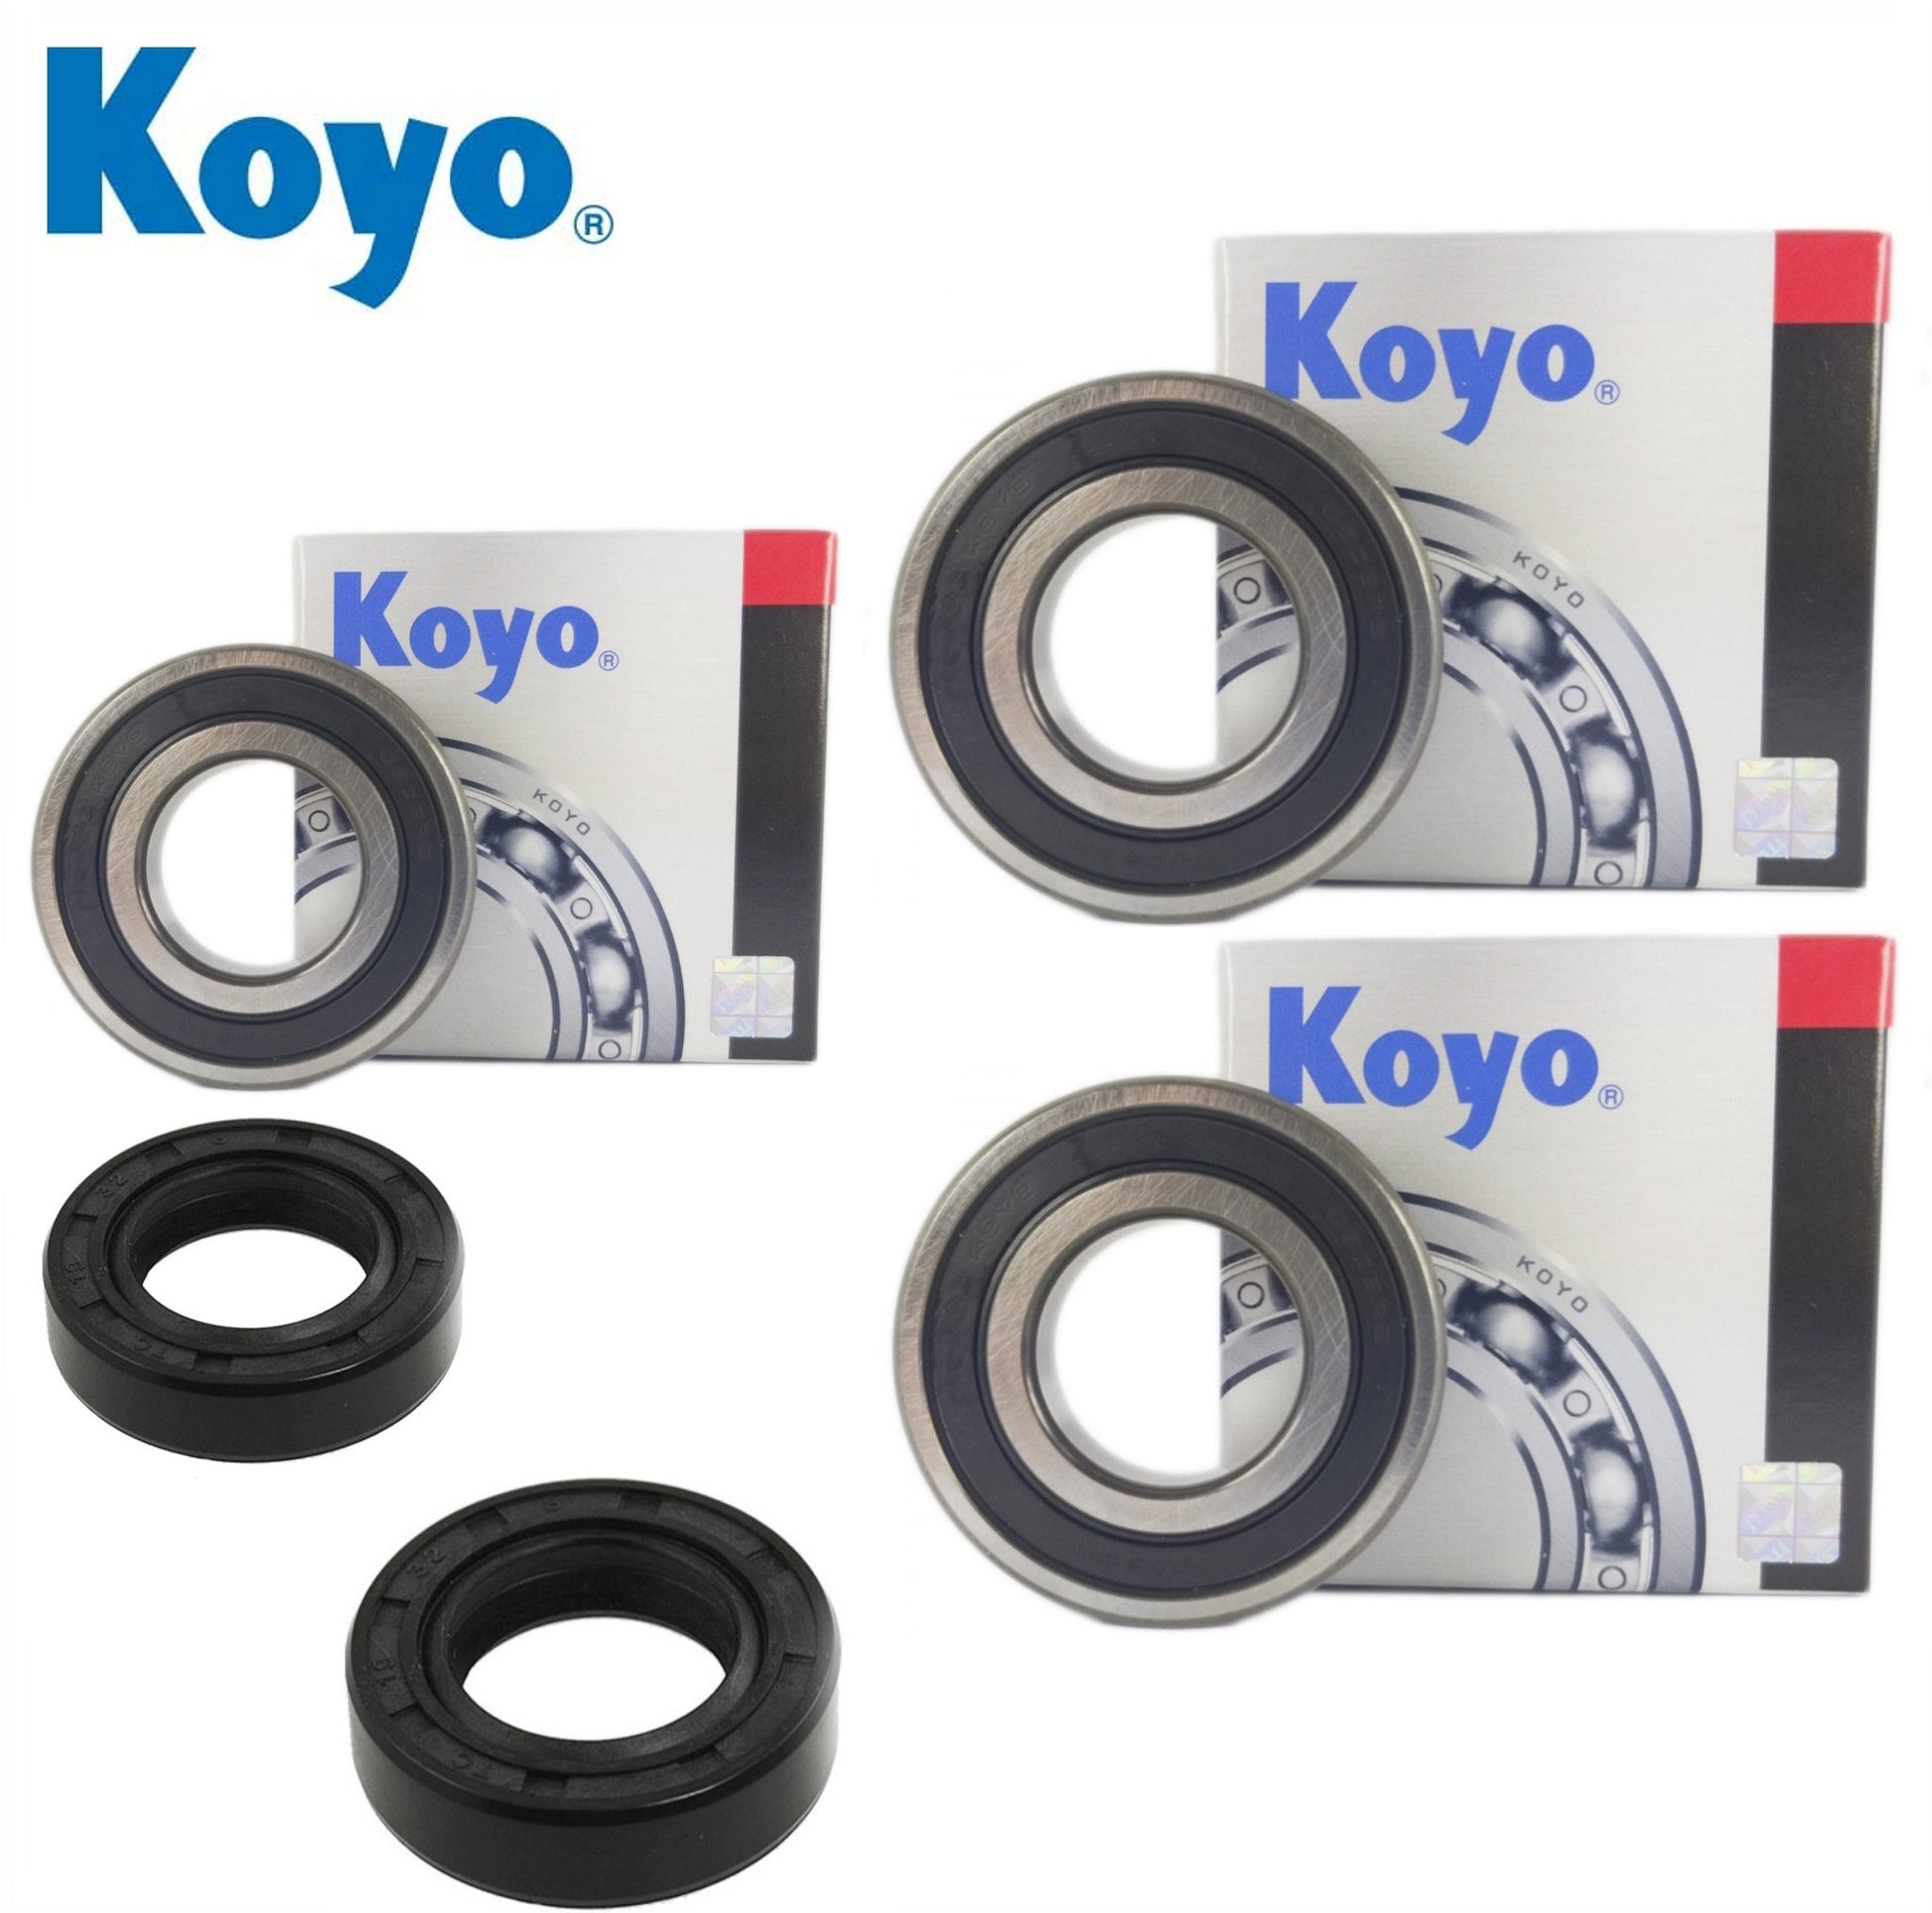 Yamaha MT09 1RCB Rear Wheel Bearing Kit with Koyo bearings